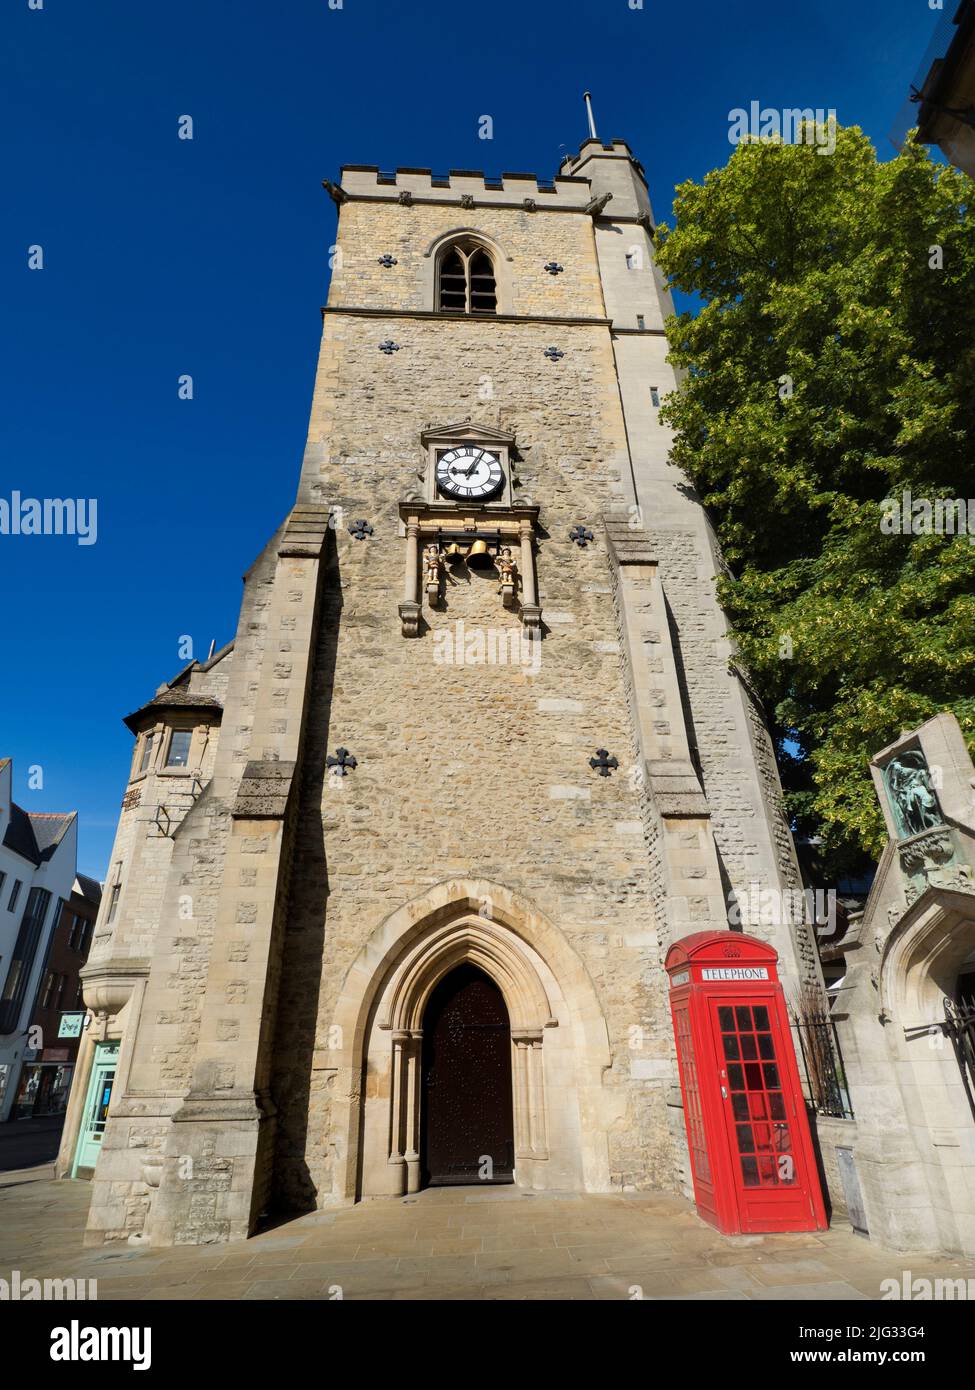 Carfax Tower, der letzte verbleibende Teil einer mittelalterlichen Kirche aus dem 12th. Jahrhundert, steht im Zentrum von Oxford, an der Kreuzung der George Street, der High Street Stockfoto